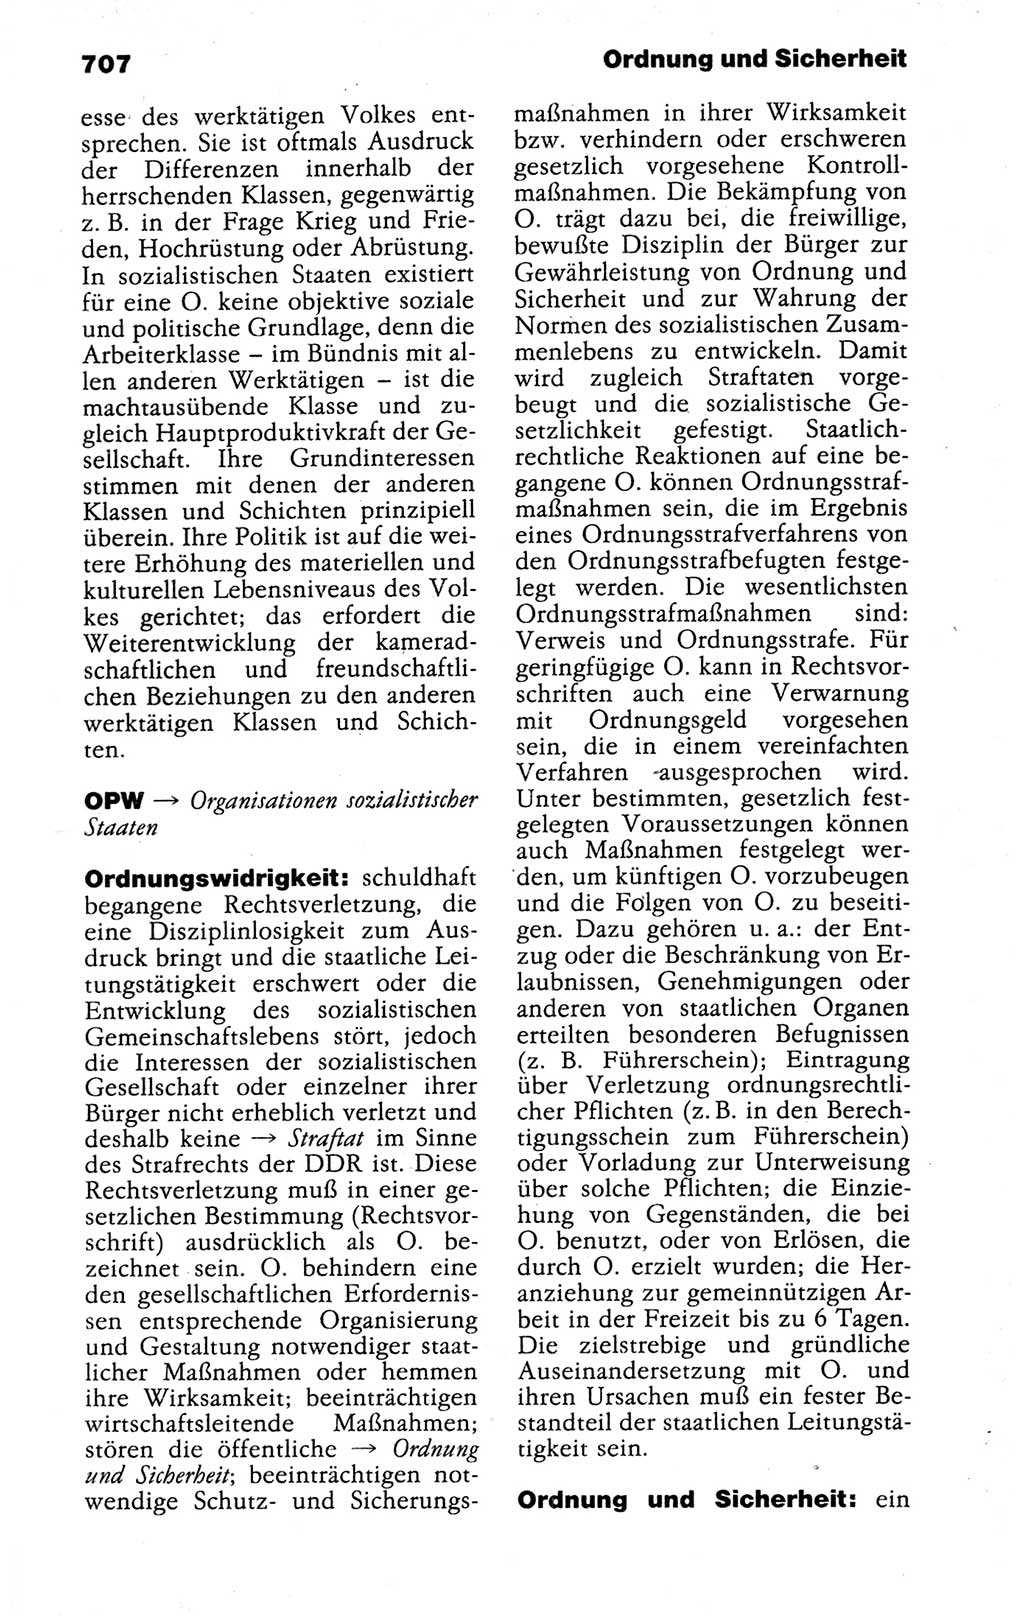 Kleines politisches Wörterbuch [Deutsche Demokratische Republik (DDR)] 1988, Seite 707 (Kl. pol. Wb. DDR 1988, S. 707)